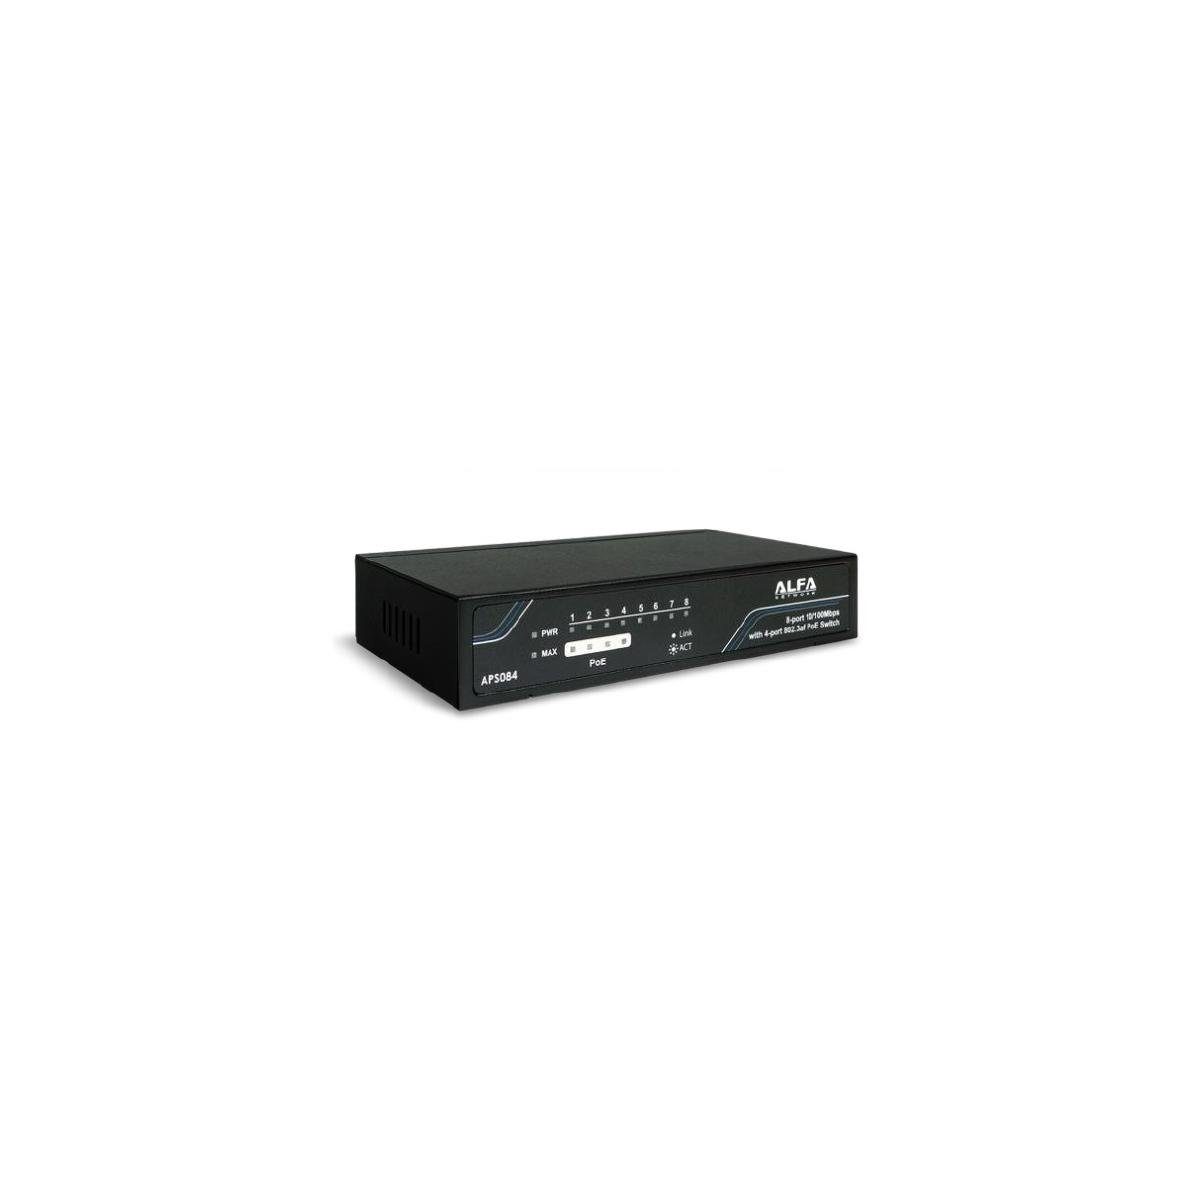 Alfa APS084 - Desktop Ethernet mit... 10/100 Netzwerk-Switch 8-Port Mbps Switch